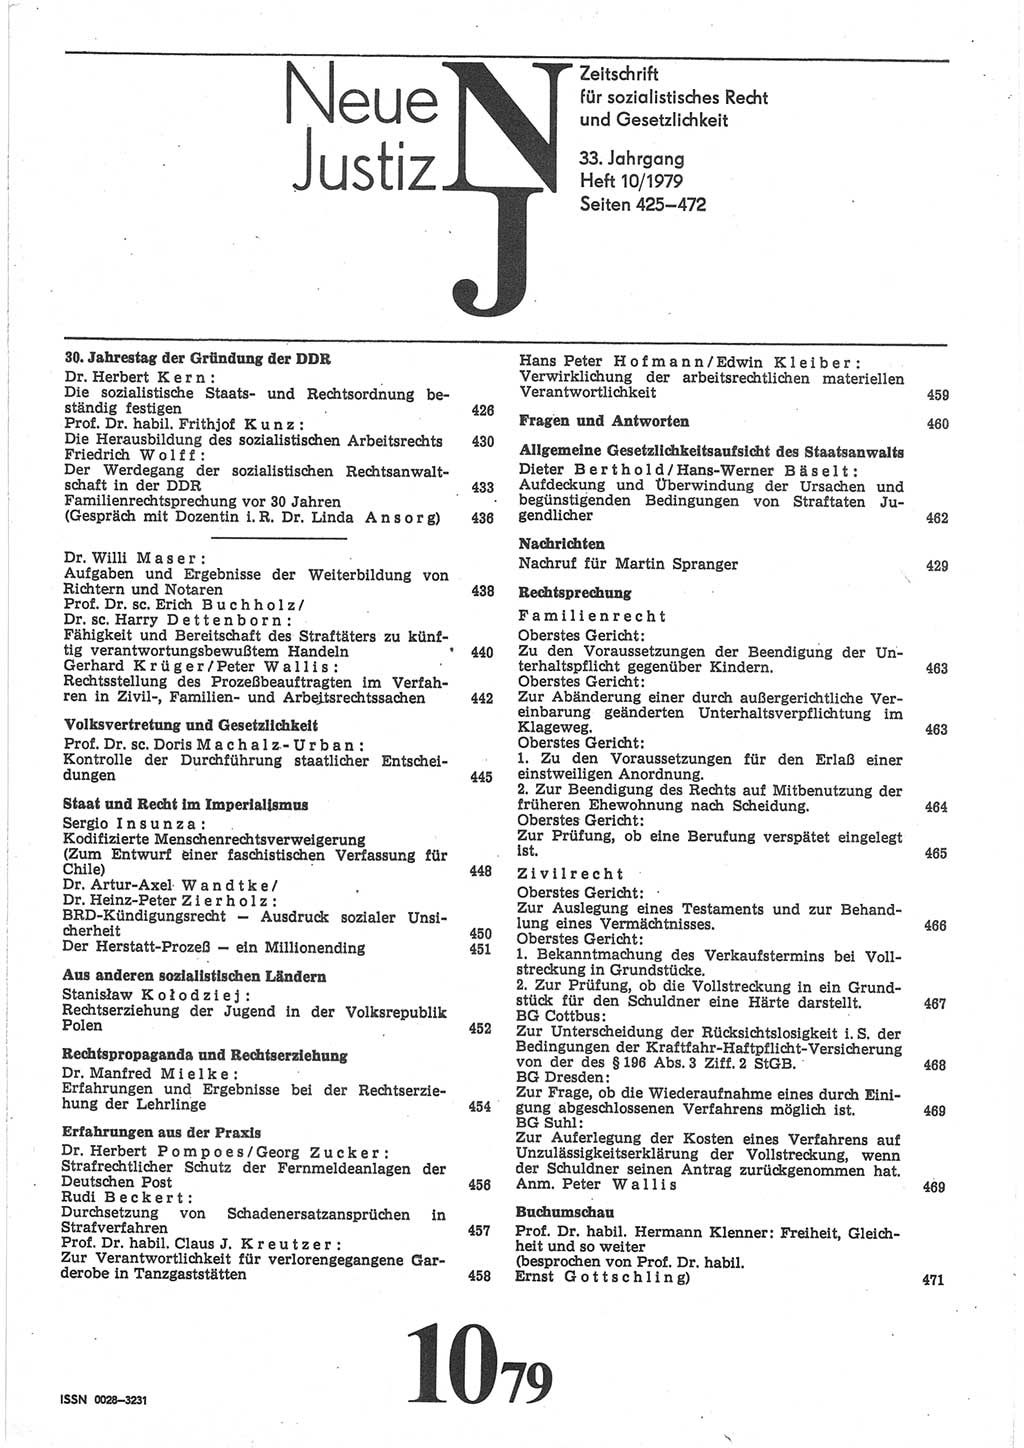 Neue Justiz (NJ), Zeitschrift für sozialistisches Recht und Gesetzlichkeit [Deutsche Demokratische Republik (DDR)], 33. Jahrgang 1979, Seite 425 (NJ DDR 1979, S. 425)